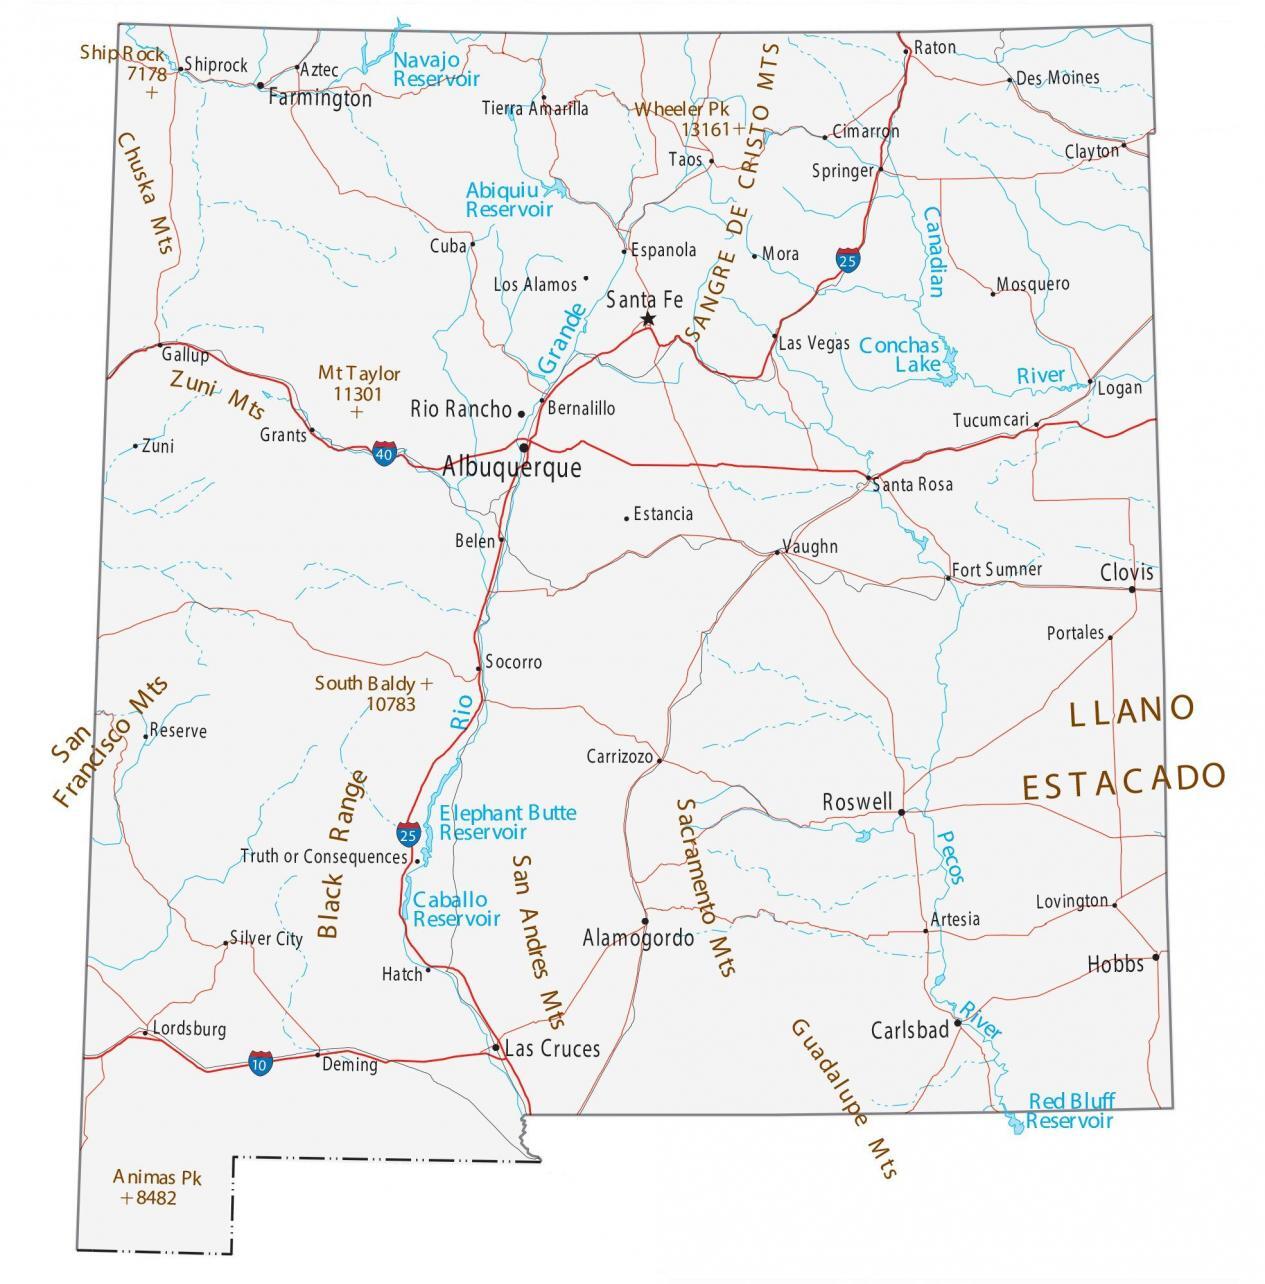 Mapa de Nuevo México - Ciudades y carreteras